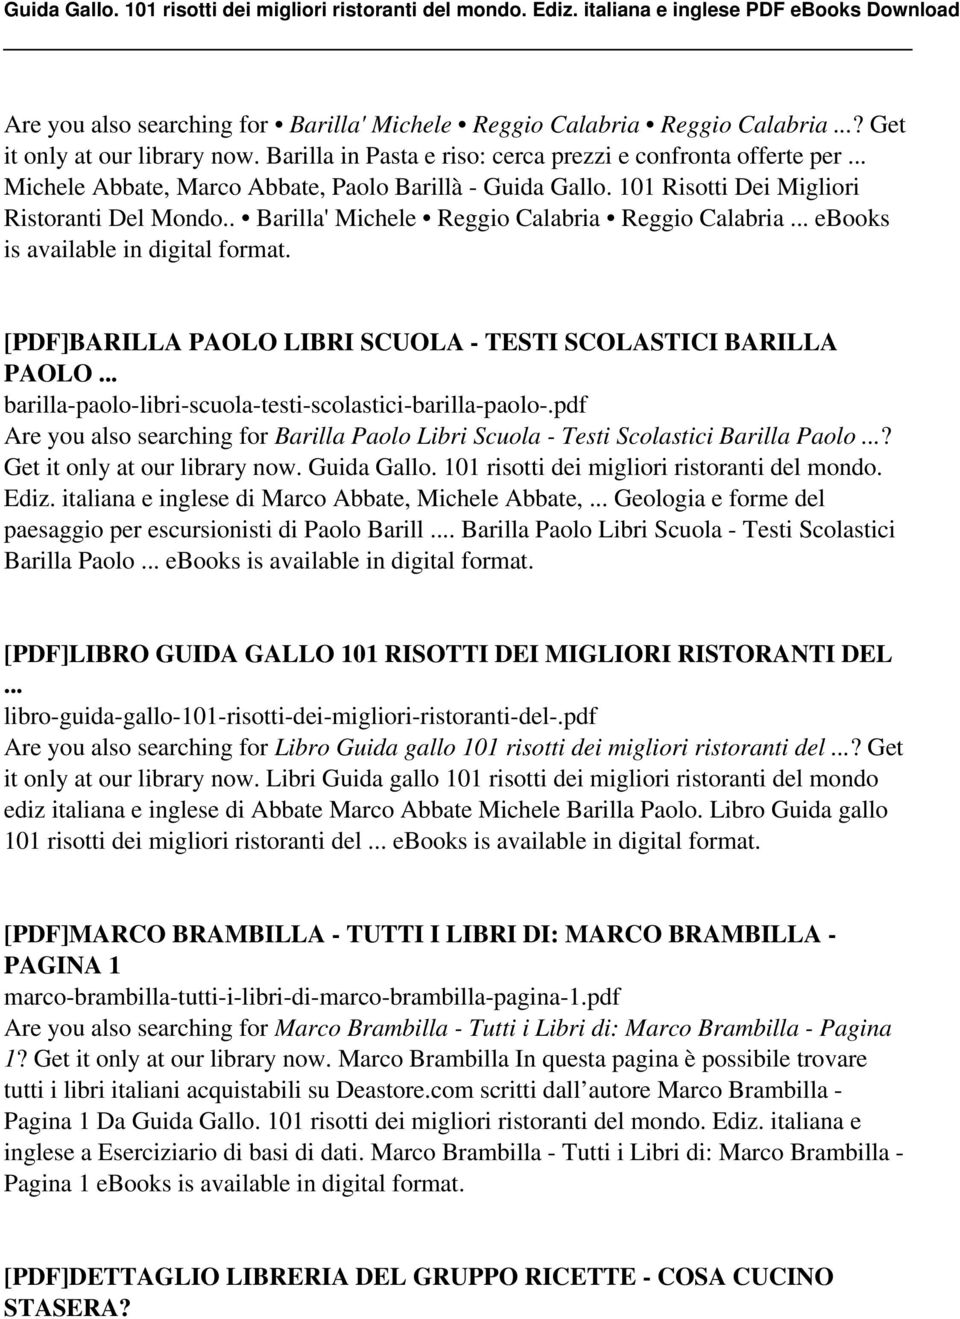 [PDF]BARILLA PAOLO LIBRI SCUOLA - TESTI SCOLASTICI BARILLA PAOLO... barilla-paolo-libri-scuola-testi-scolastici-barilla-paolo-.